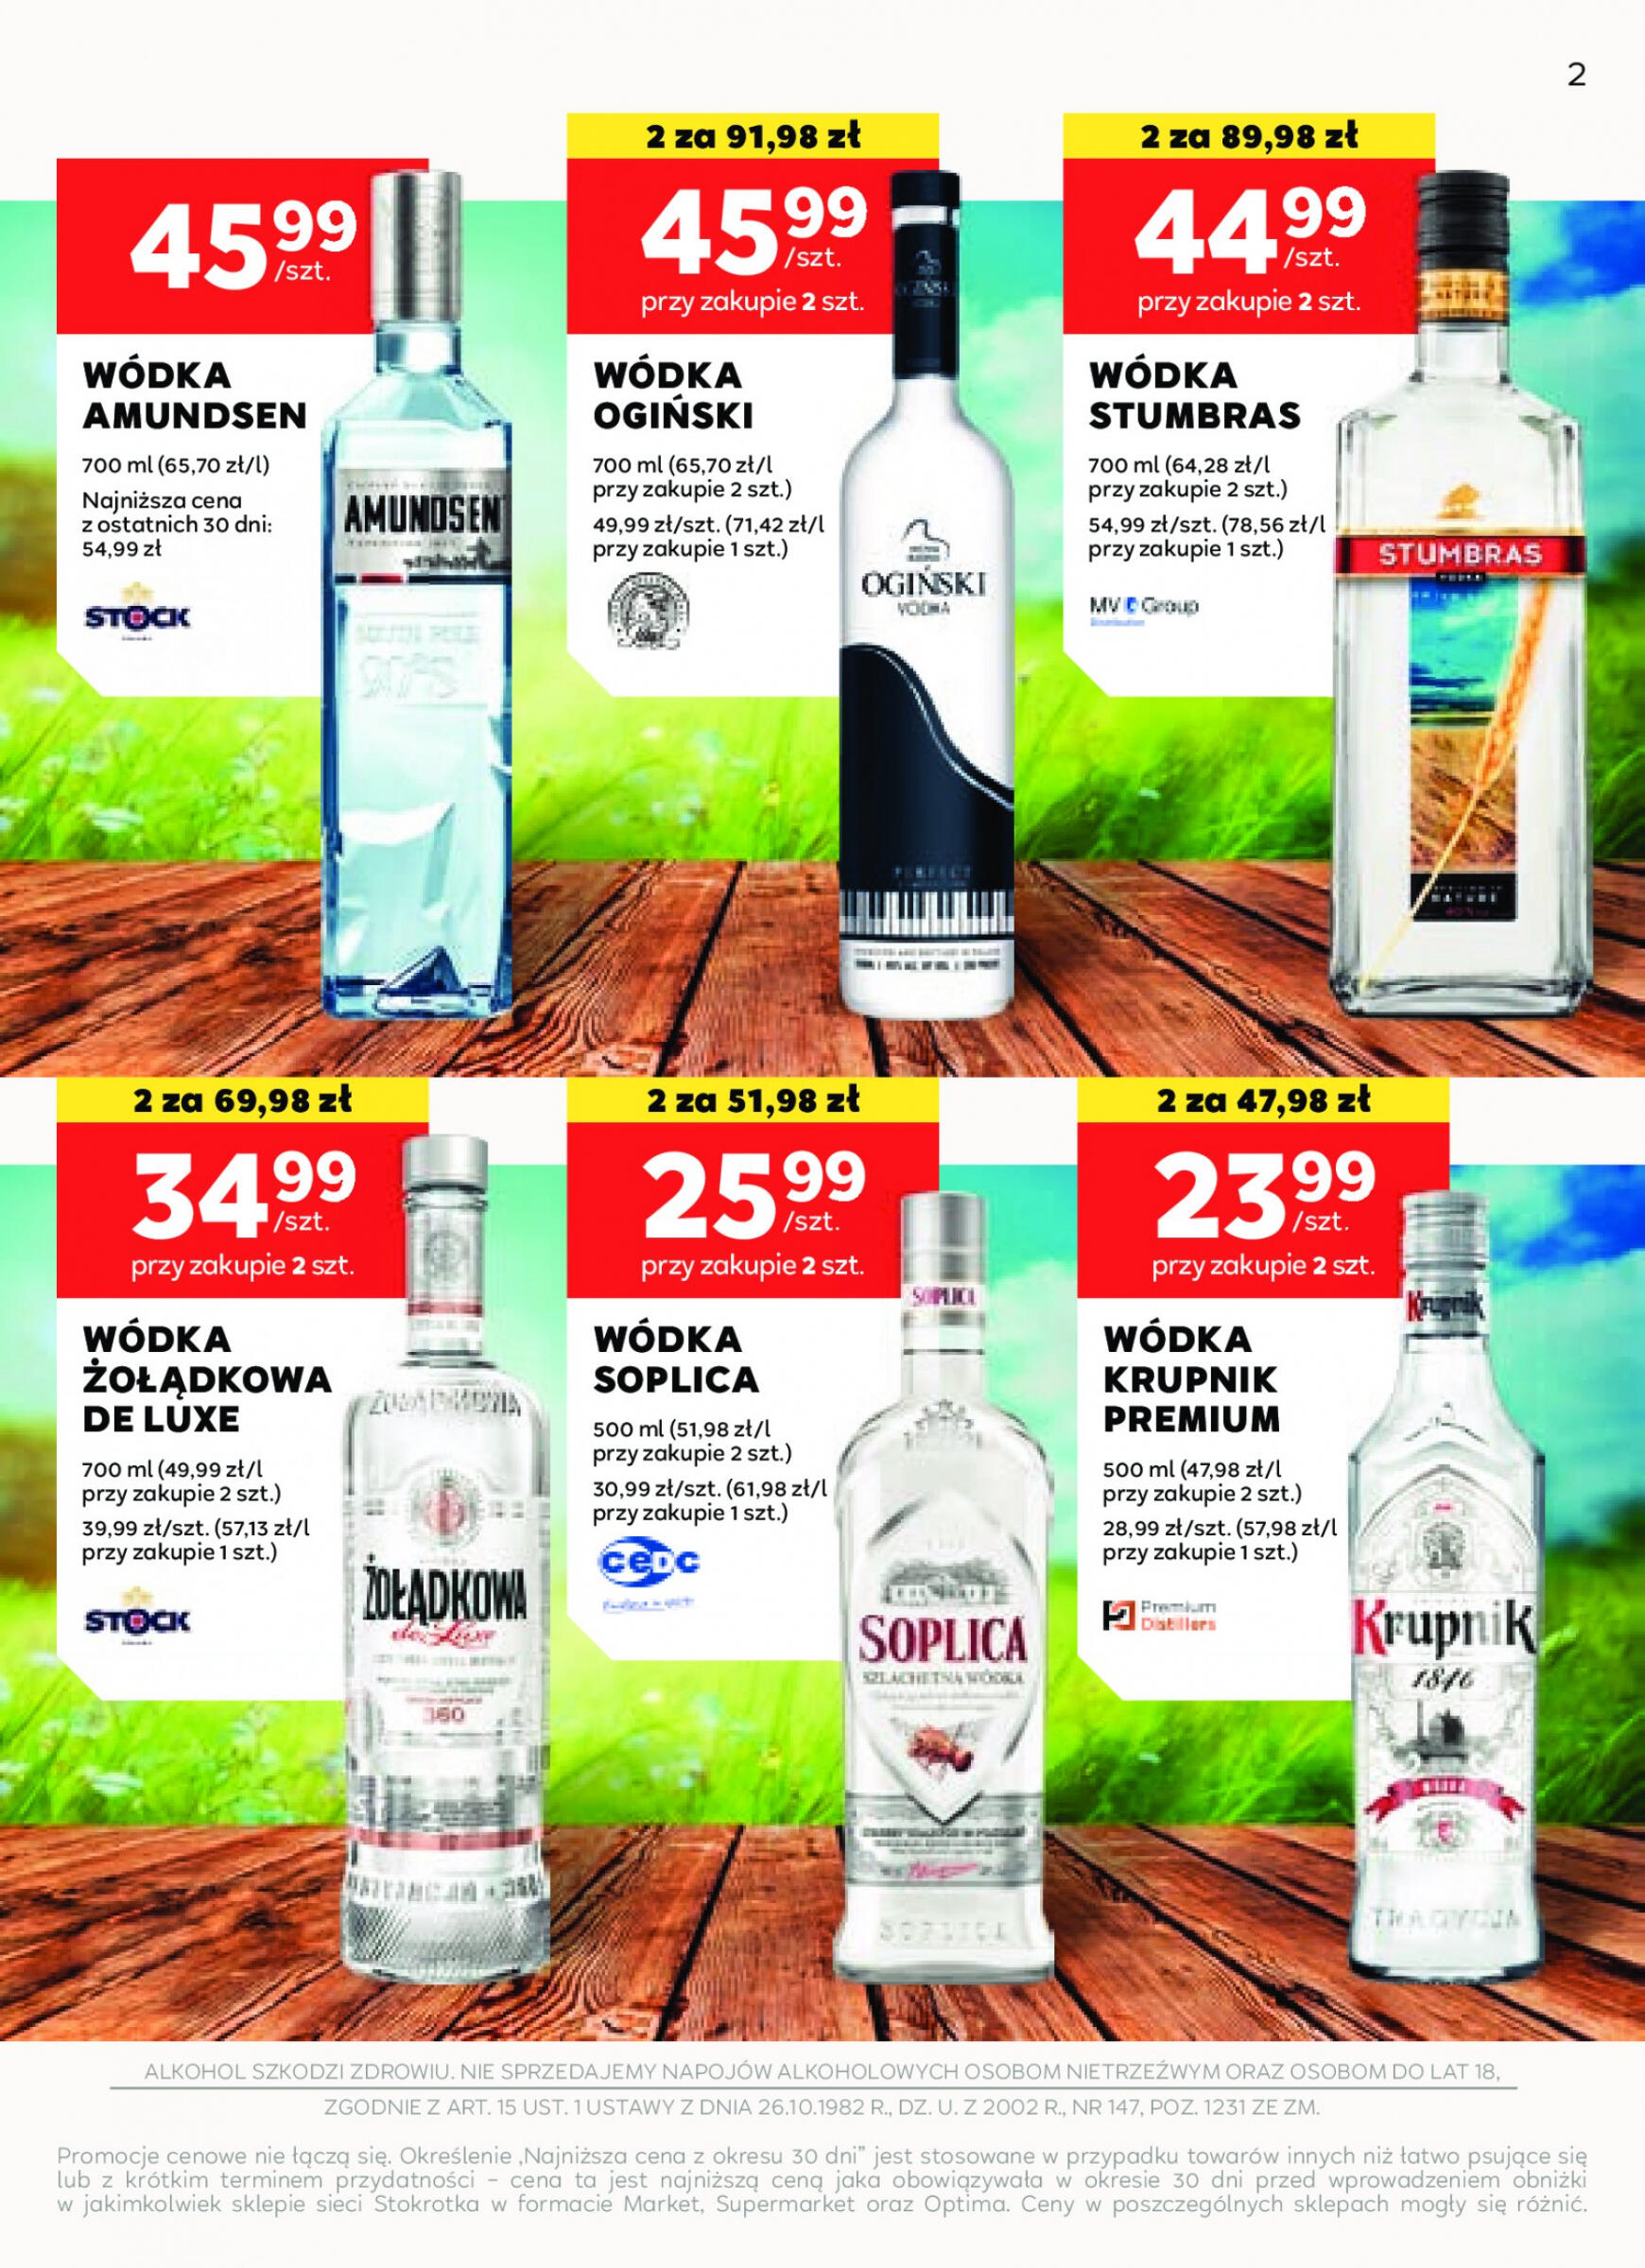 stokrotka - Stokrotka Supermarket - Oferta alkoholowa gazetka aktualna ważna od 25.04. - 22.05. - page: 2